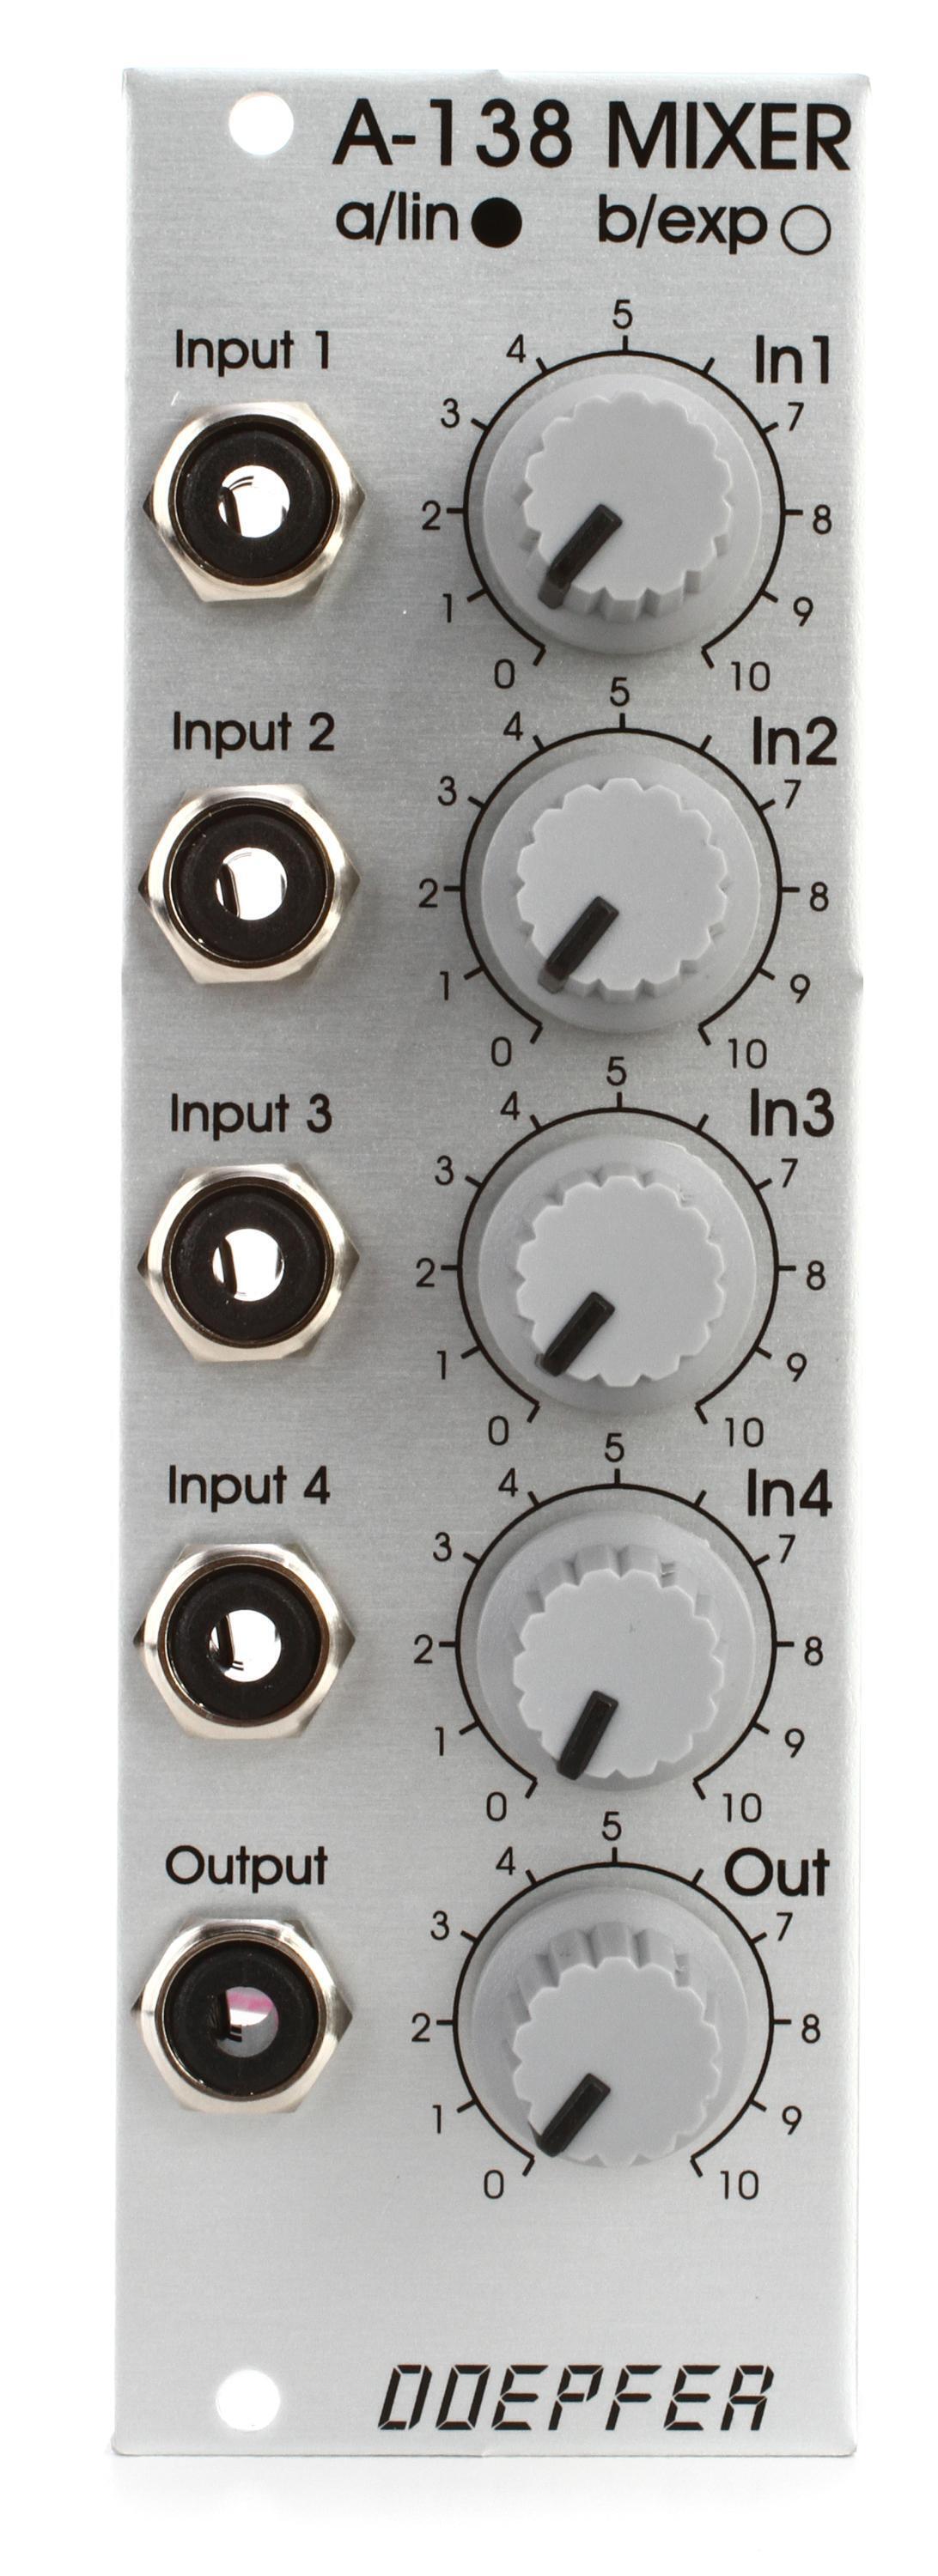 Doepfer A-138a 4-channel Linear Mixer Eurorack Module - Standard Edition